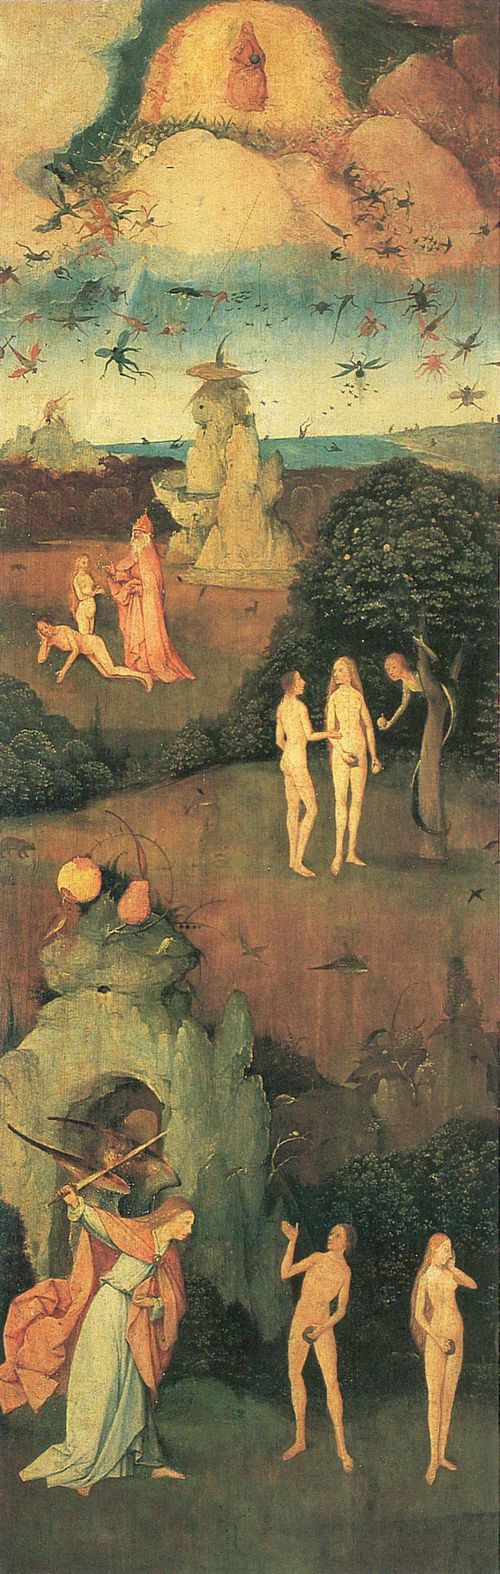 Bosch, Hieronymus: Heuwagen,Triptychon, linker Flgel: Das irdische Paradies